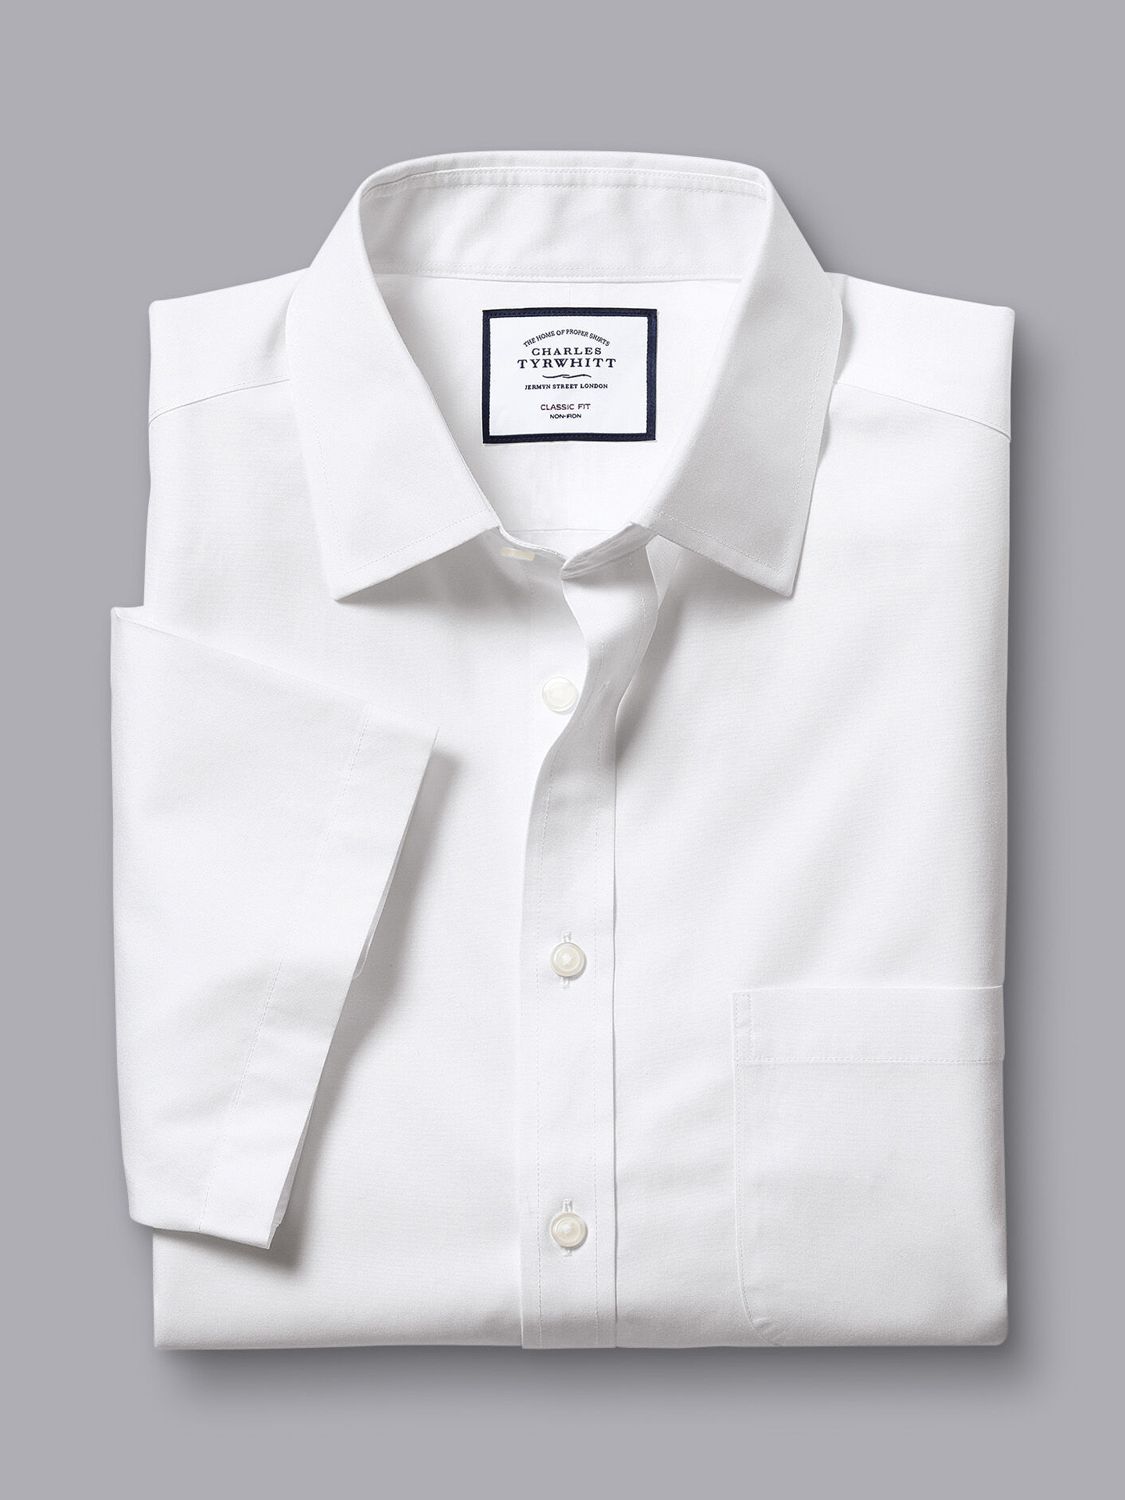 Charles Tyrwhitt Non-Iron Poplin Short-Sleeve Shirt, White, 14.5